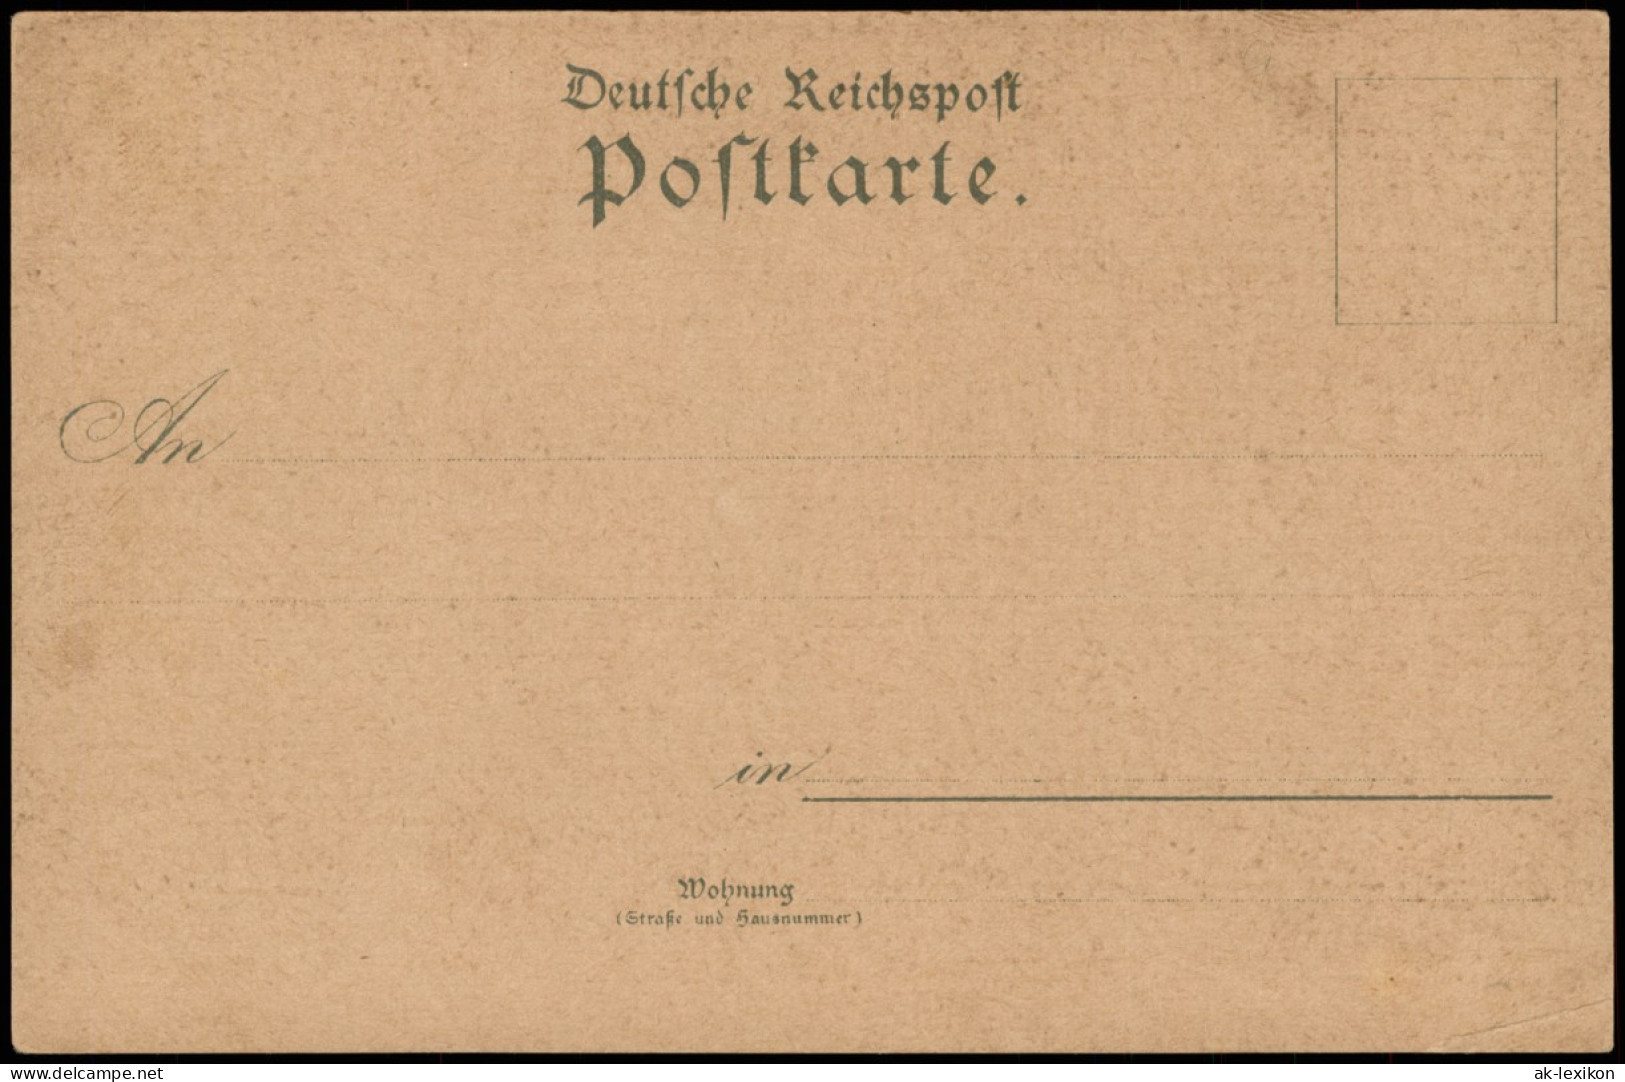 Ansichtskarte Litho AK Gotha Schlossberg Anlage Gericht MB Gruss Aus... 1906 - Gotha